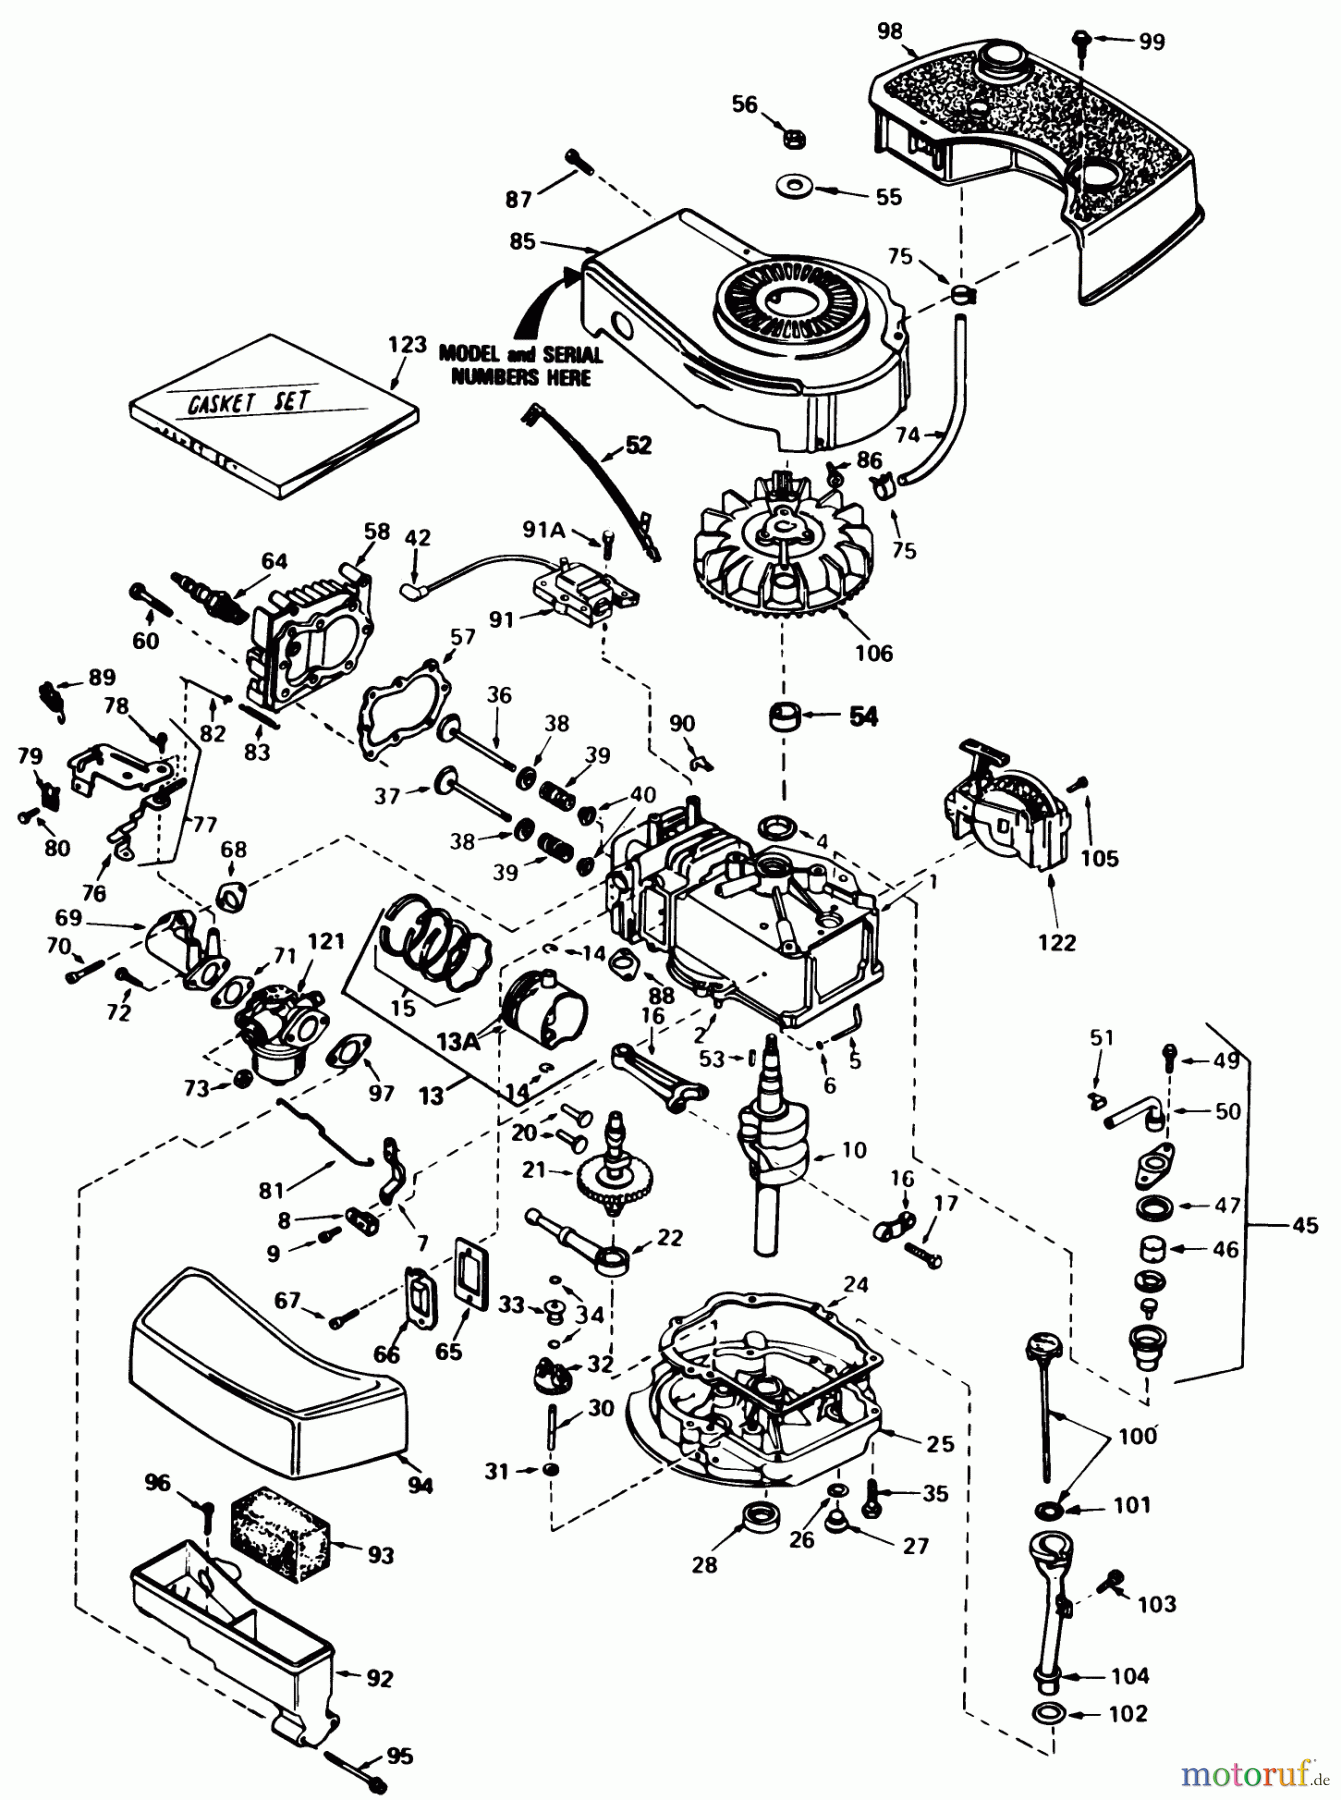  Toro Neu Mowers, Walk-Behind Seite 1 20705 - Toro Lawnmower, 1985 (5000001-5999999) ENGINE TECUMSEH MODEL NO. TNT 100-10086E